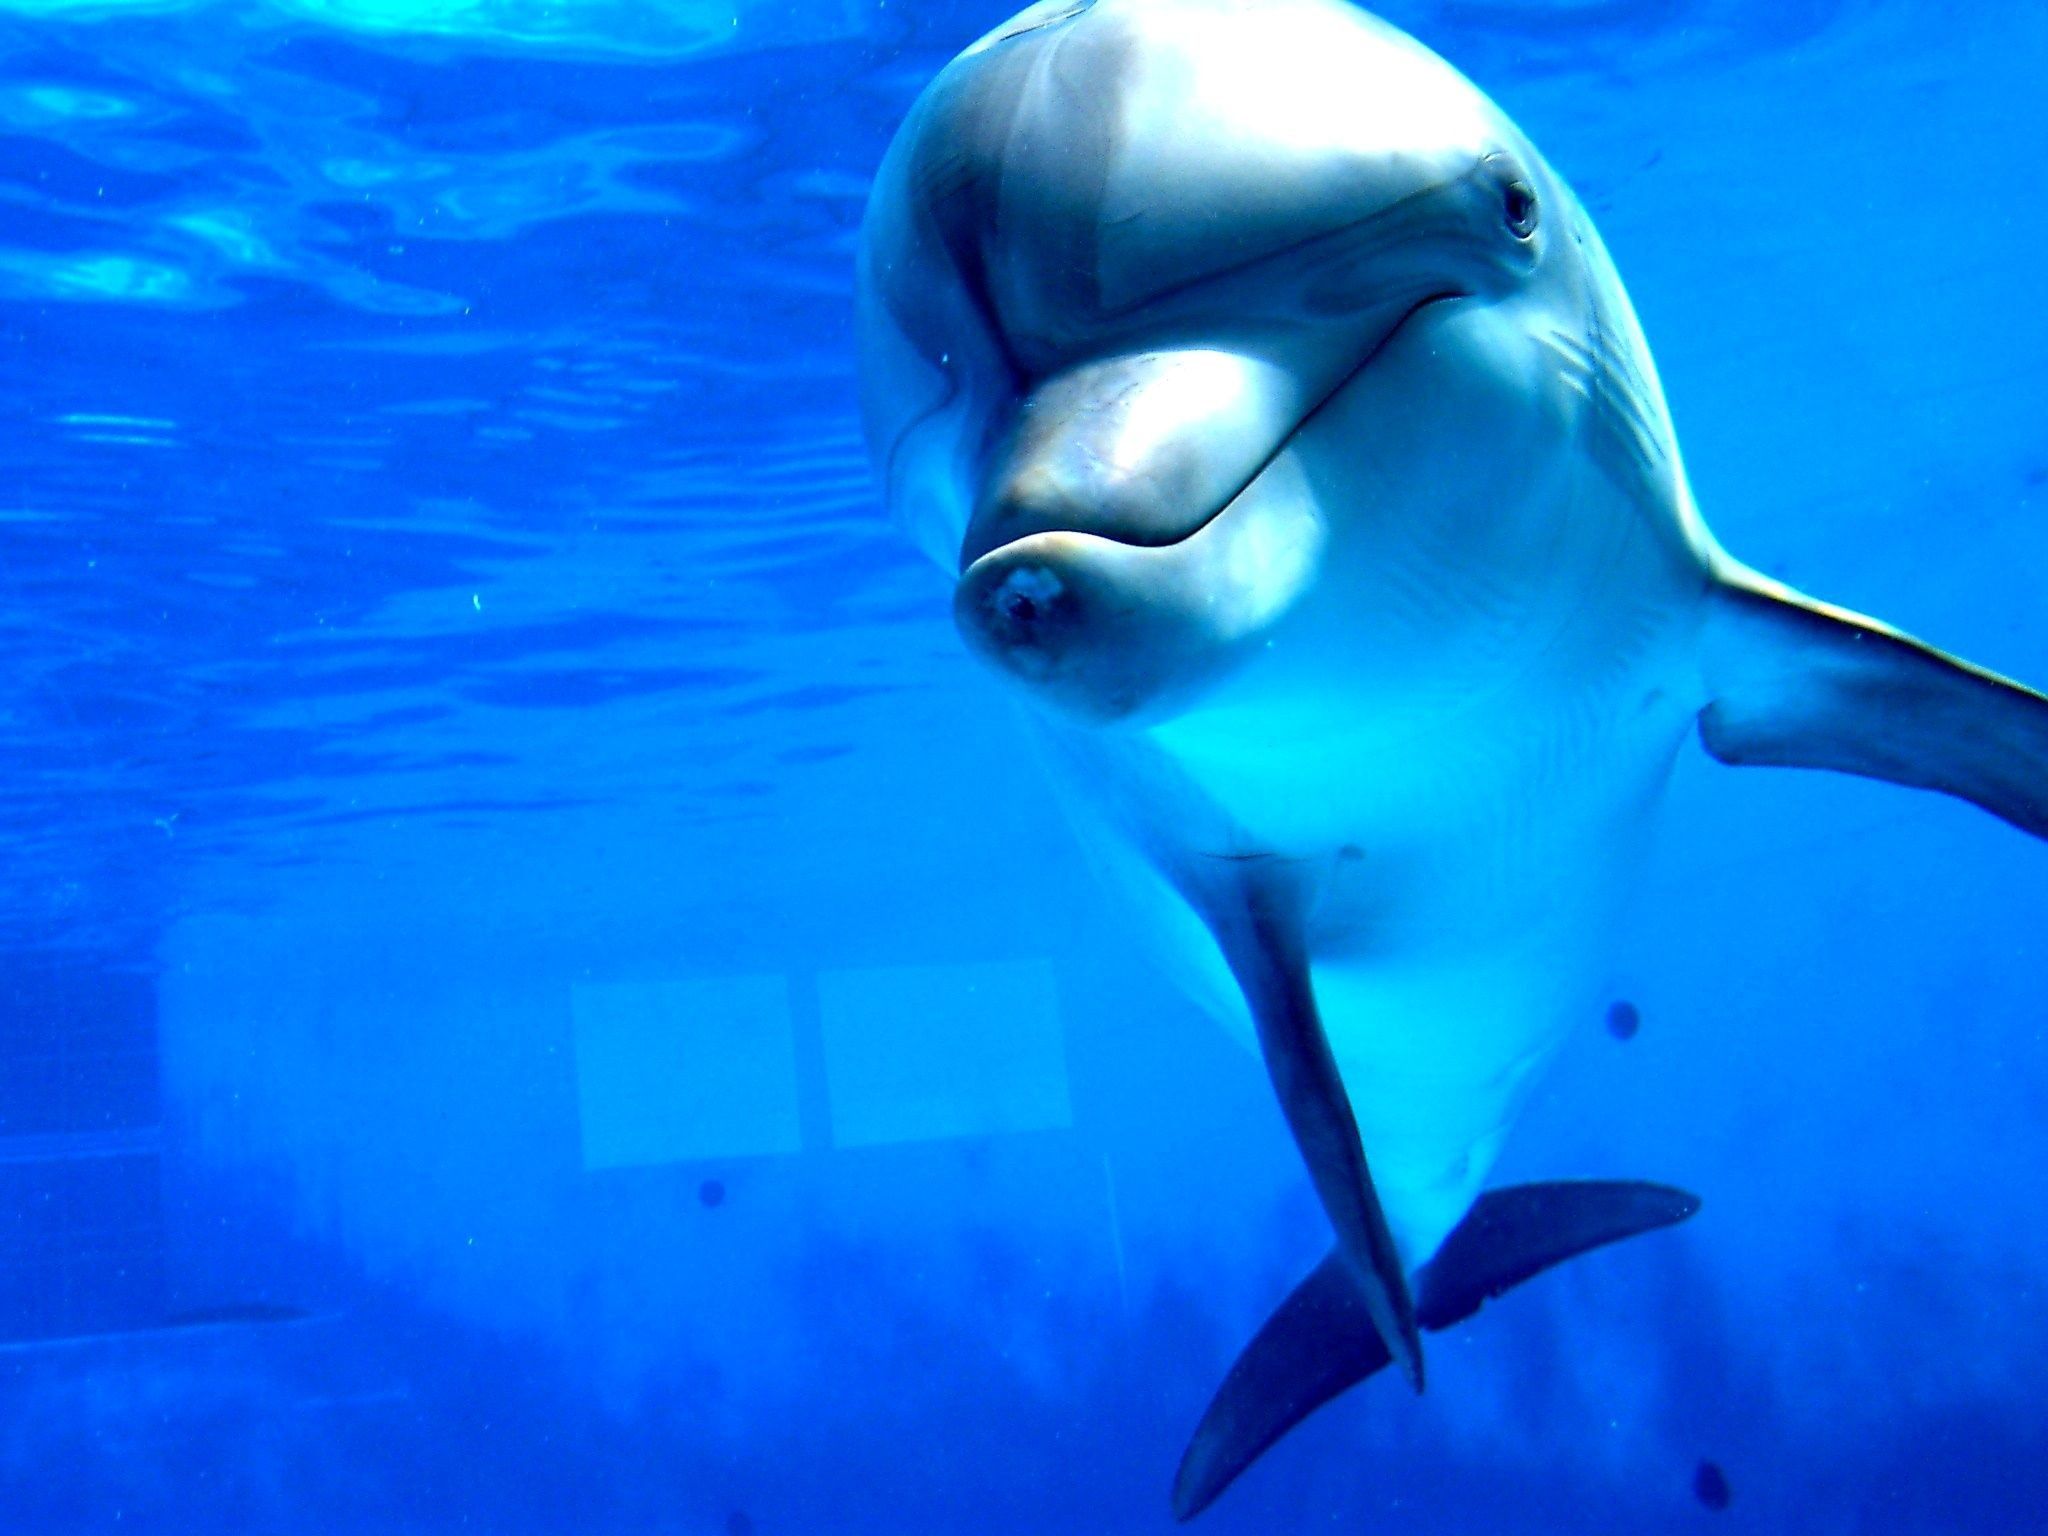 Fondos de delfines (más de 71 imágenes de fondo)